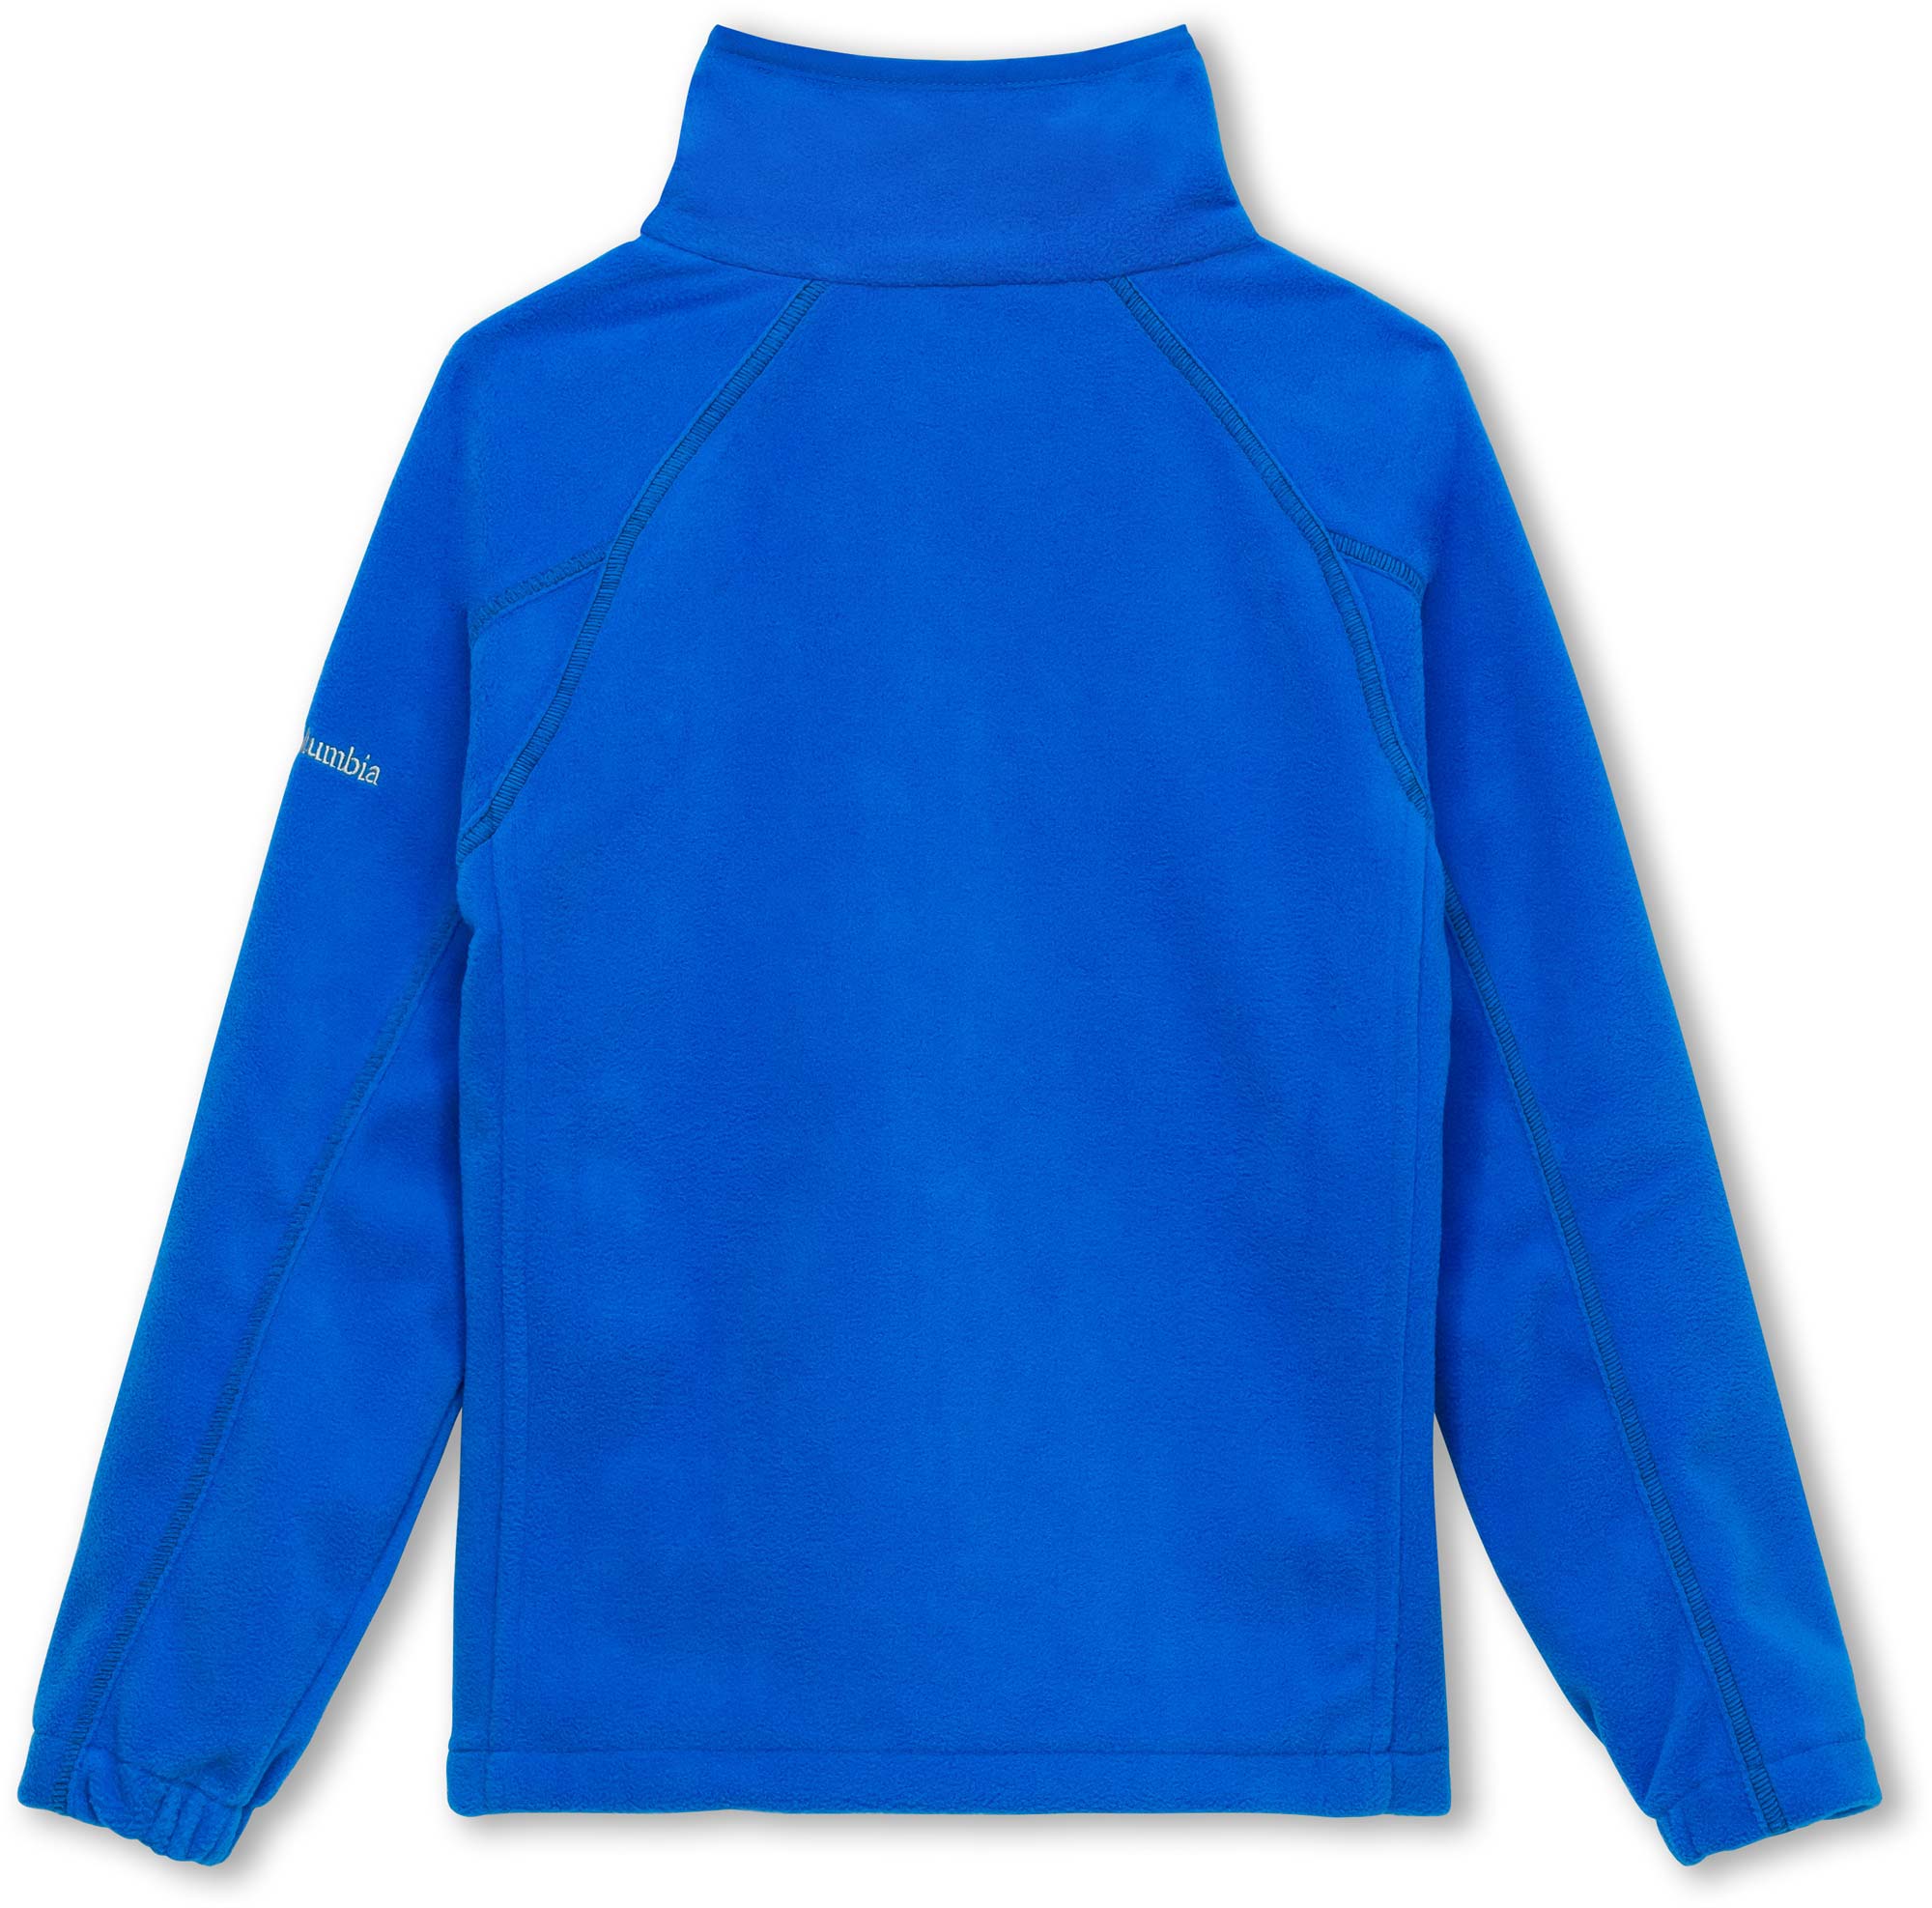 Children’s sweatshirt